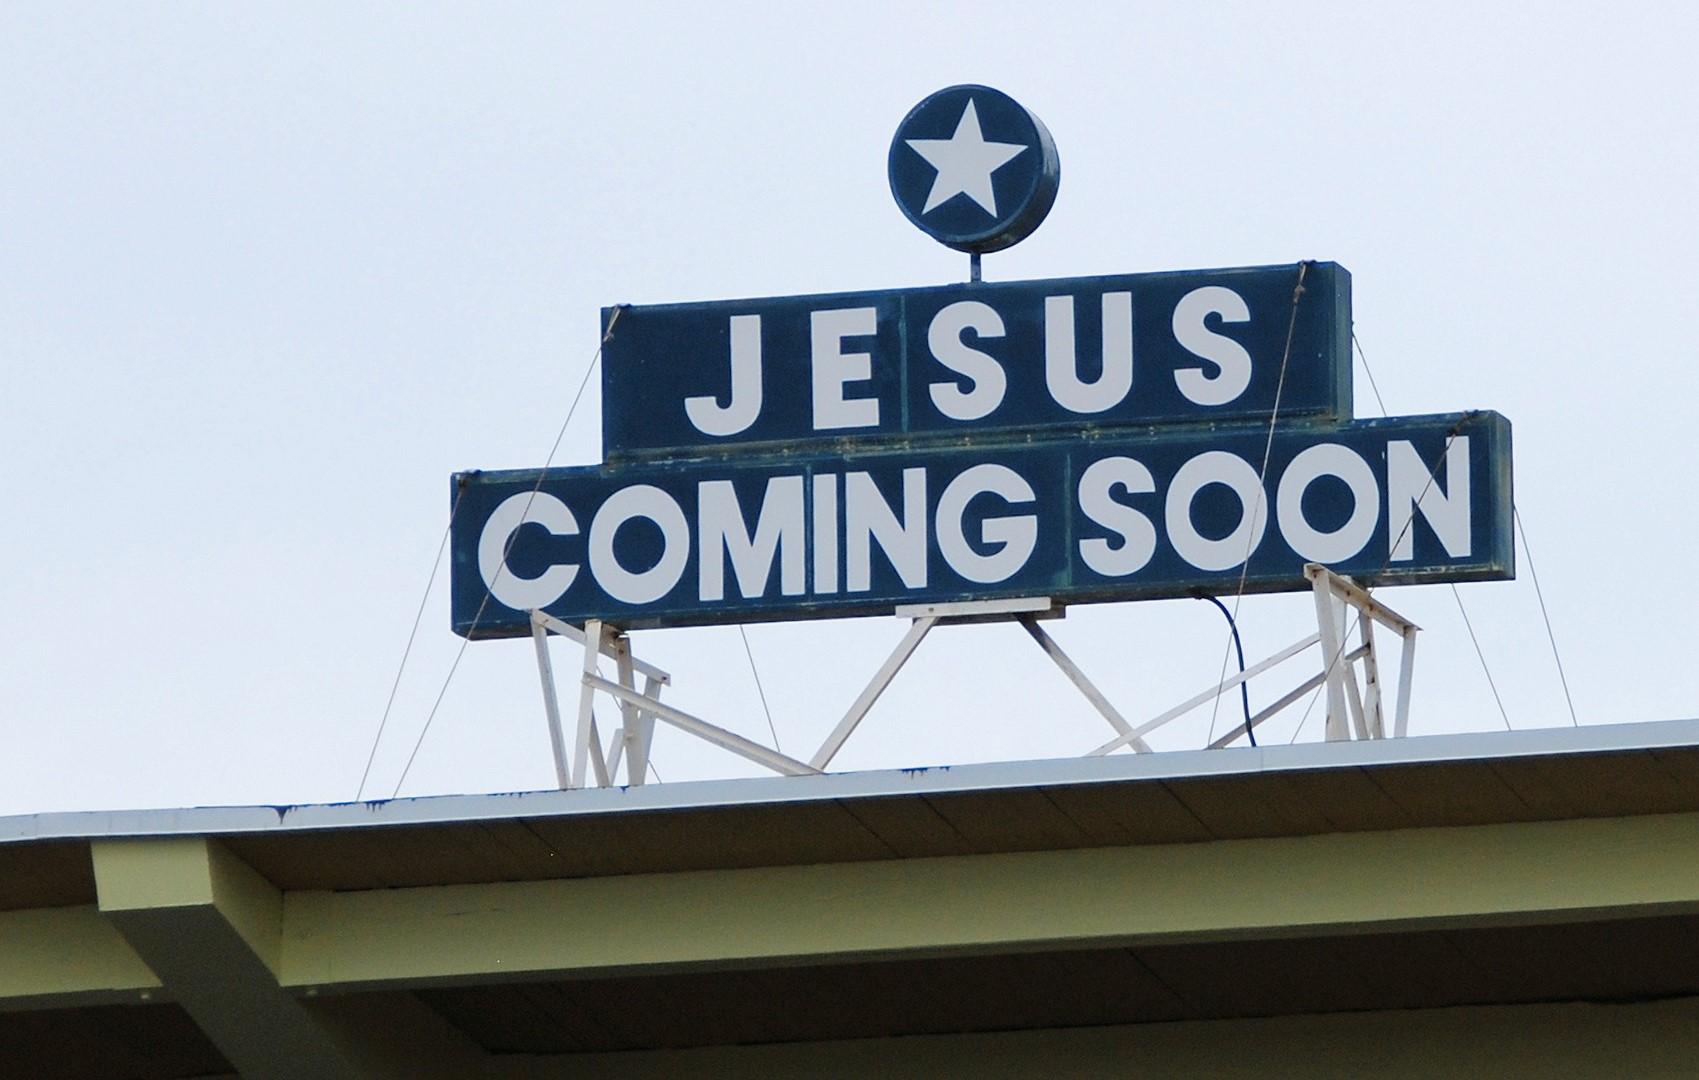 Jesus coming soon